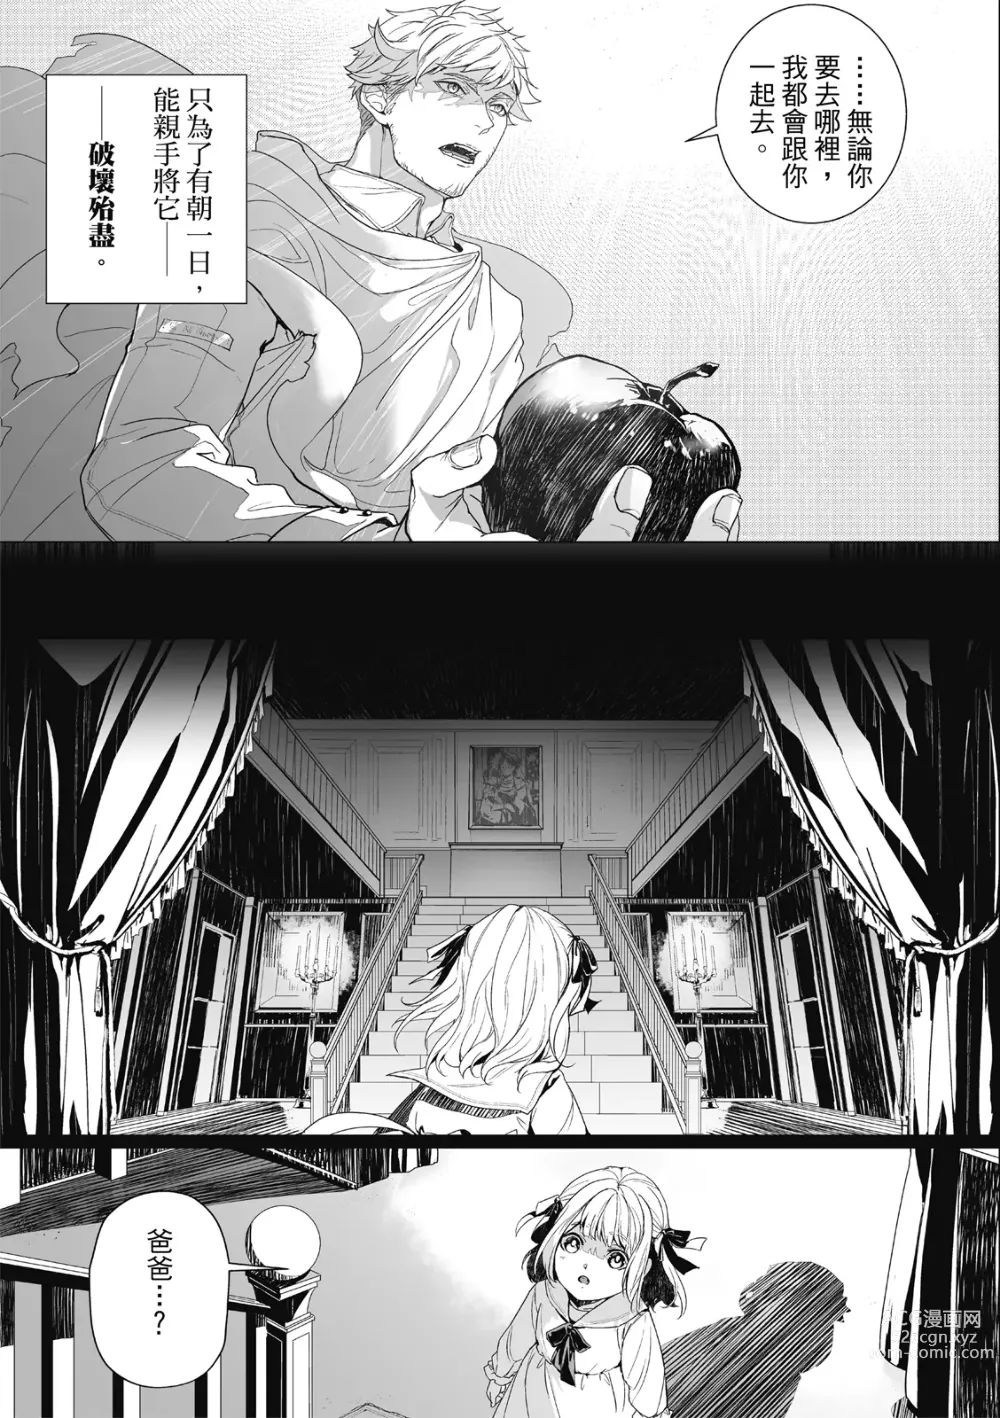 Page 20 of manga Fruit of Glaring Luxuri